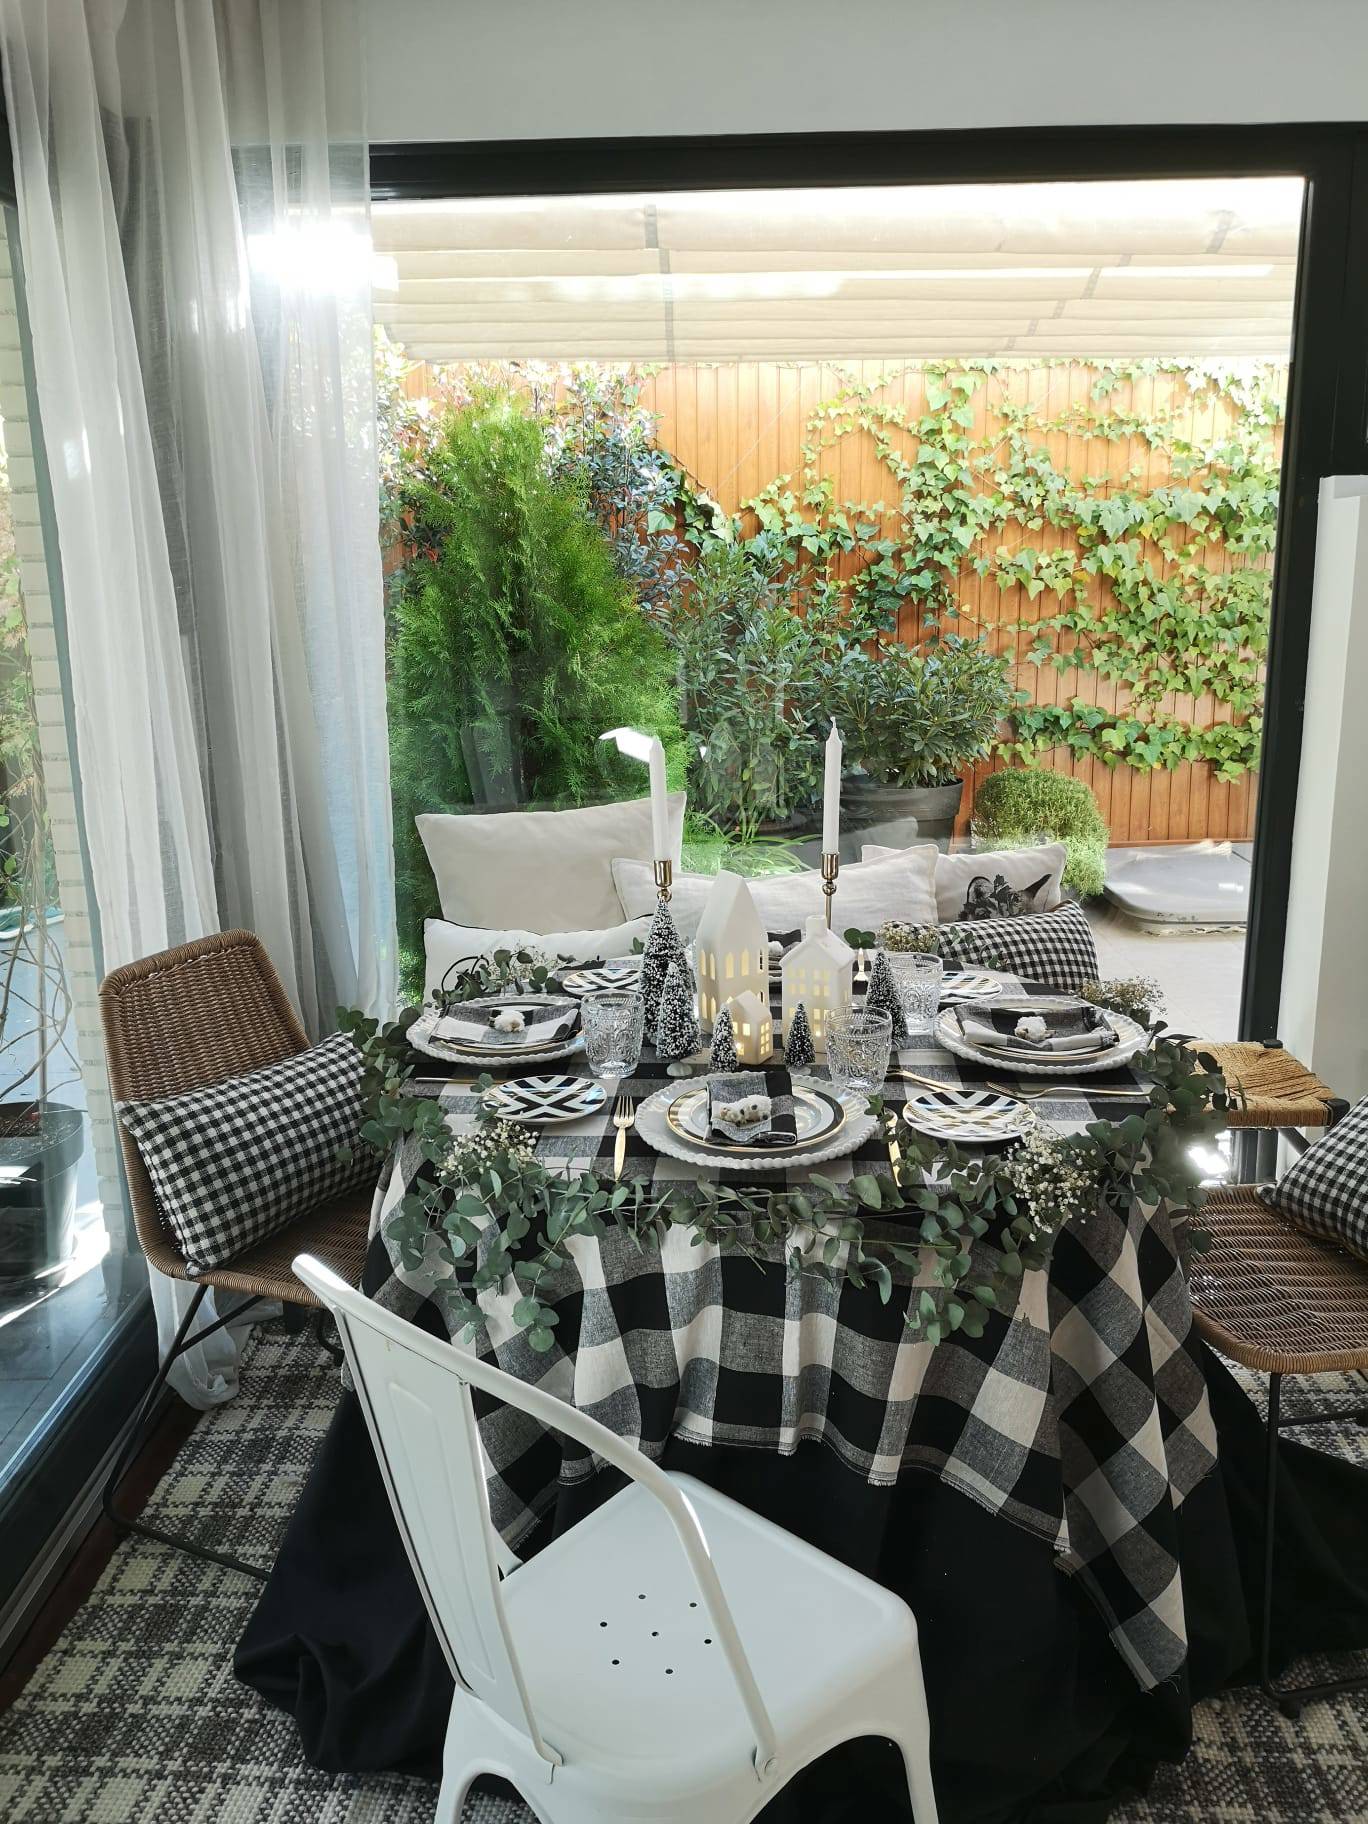 Comedor con mesa navideña con mantel de cuadros blanco y negro, sillas de fibras, banco con cojines y lámparas en forma de casita, de IKEA.